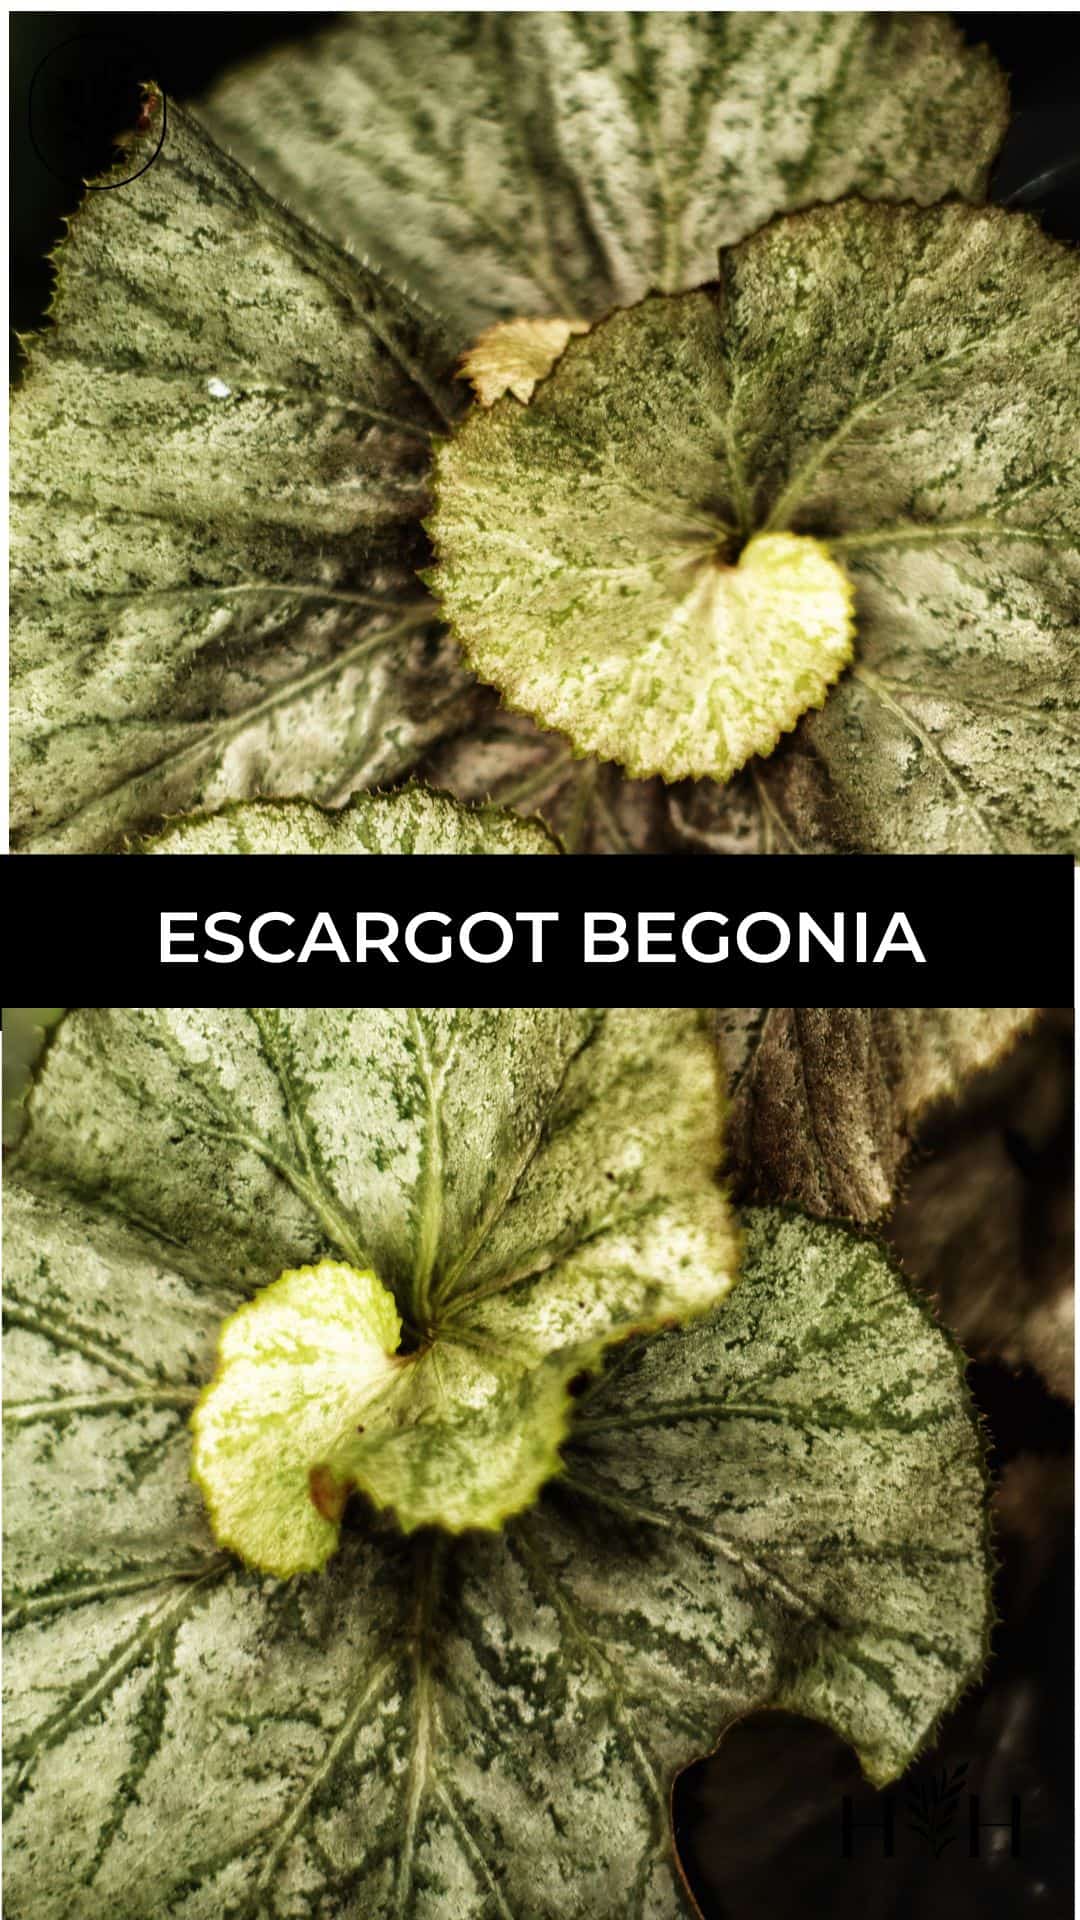 Escargot begonia via @home4theharvest